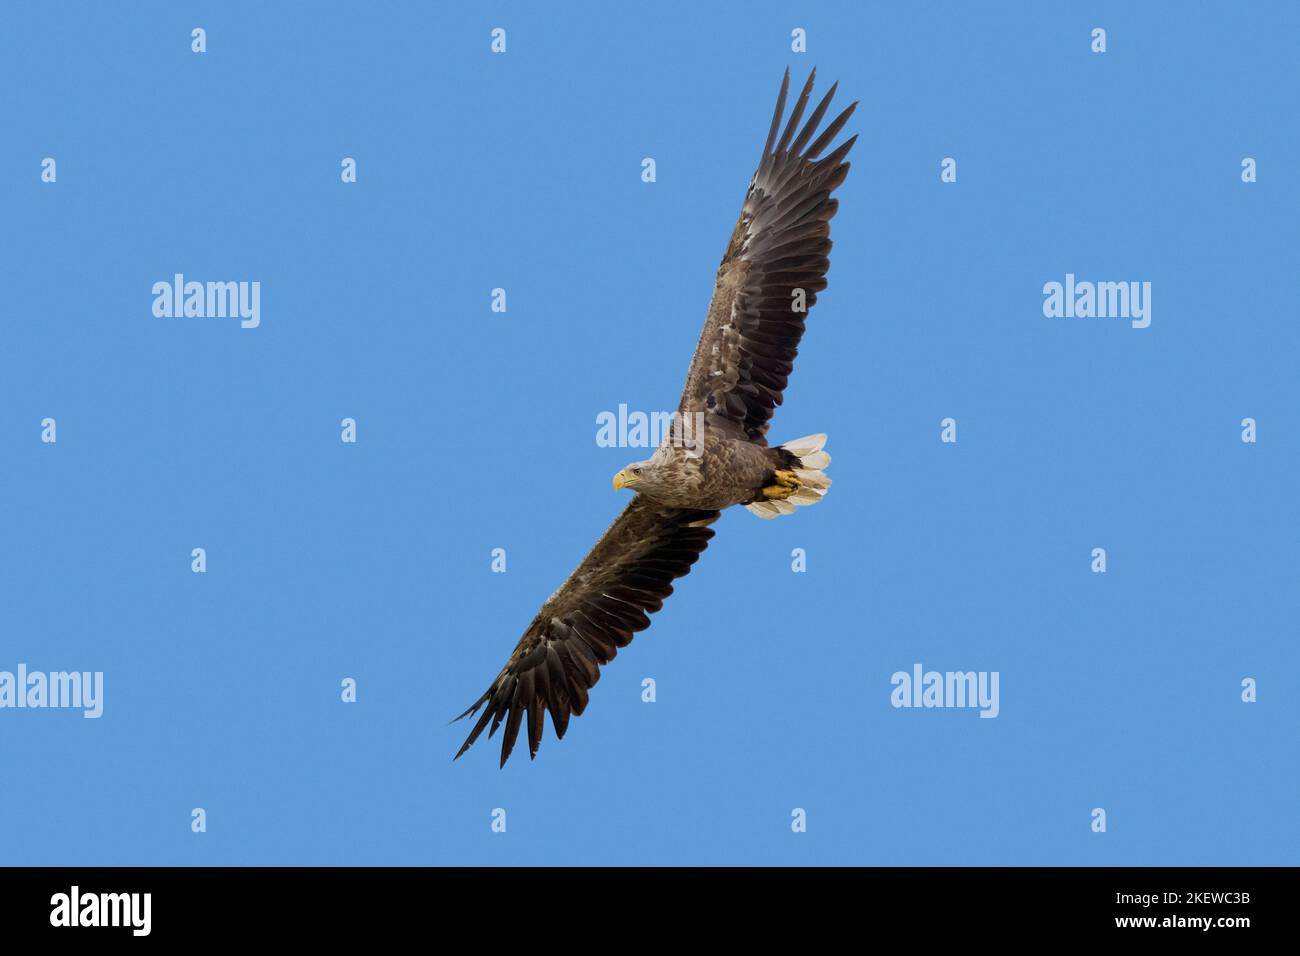 Águila de cola blanca / Águila marina euroasiática / erne (Haliaeetus albicilla) adulto en vuelo volando contra el cielo azul en verano Foto de stock